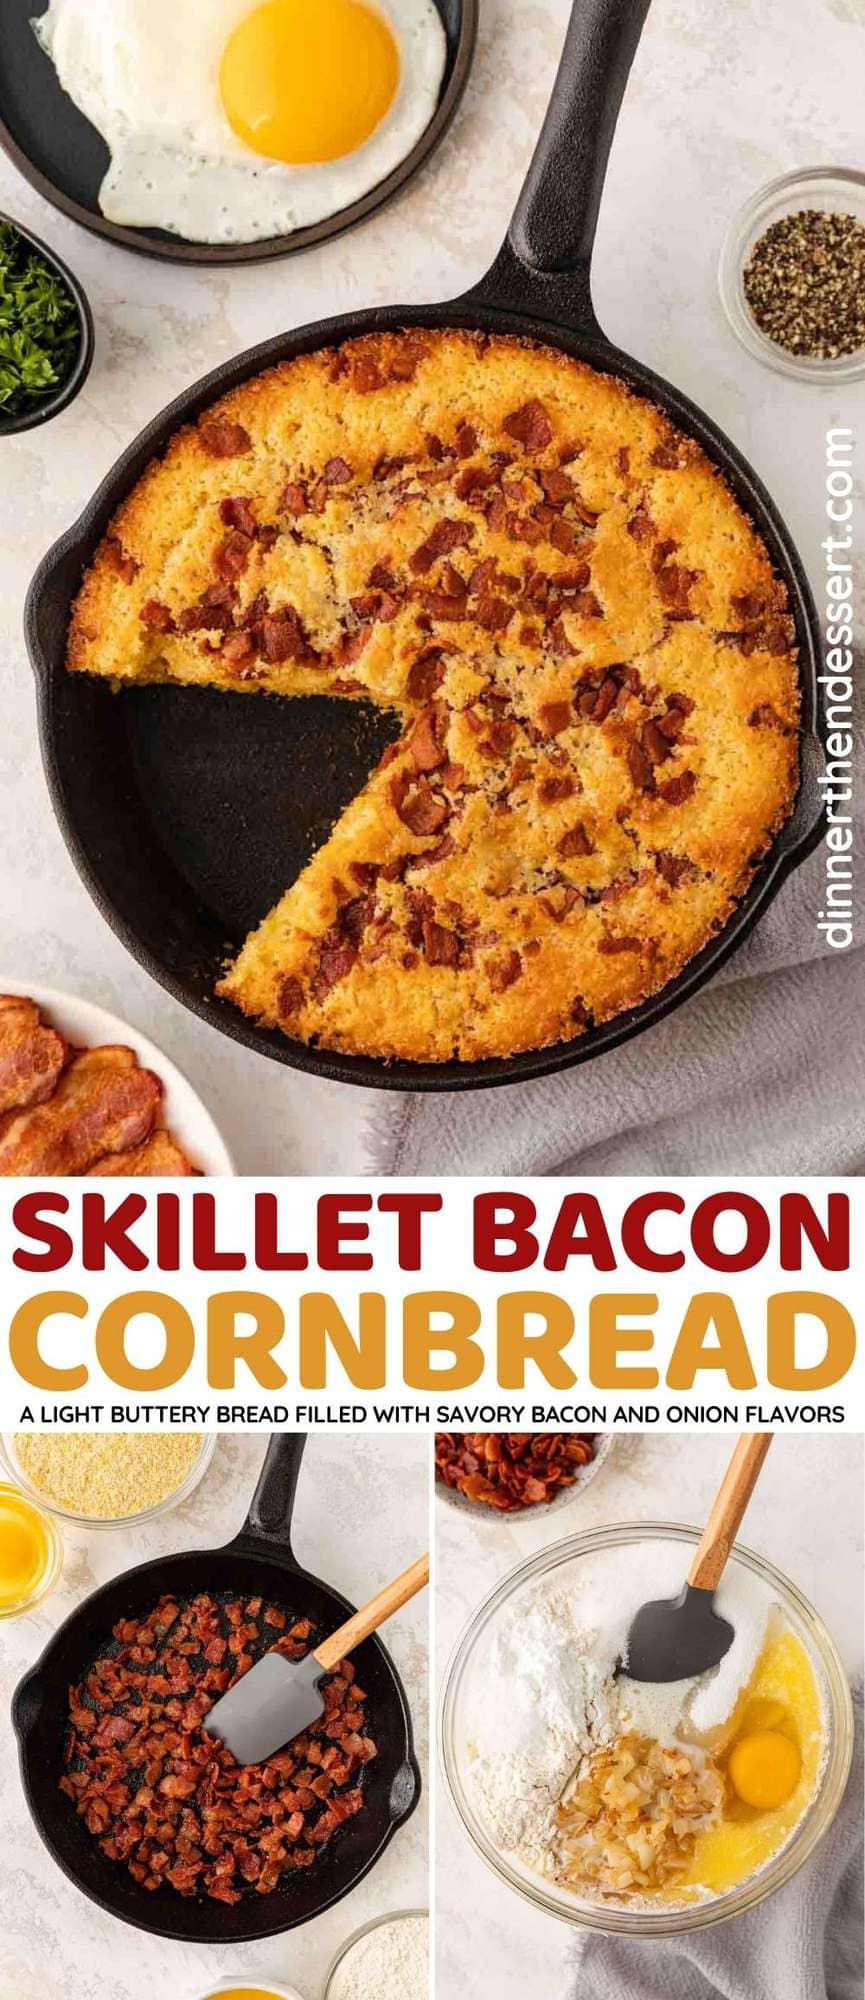 Skillet Bacon Cornbread collage